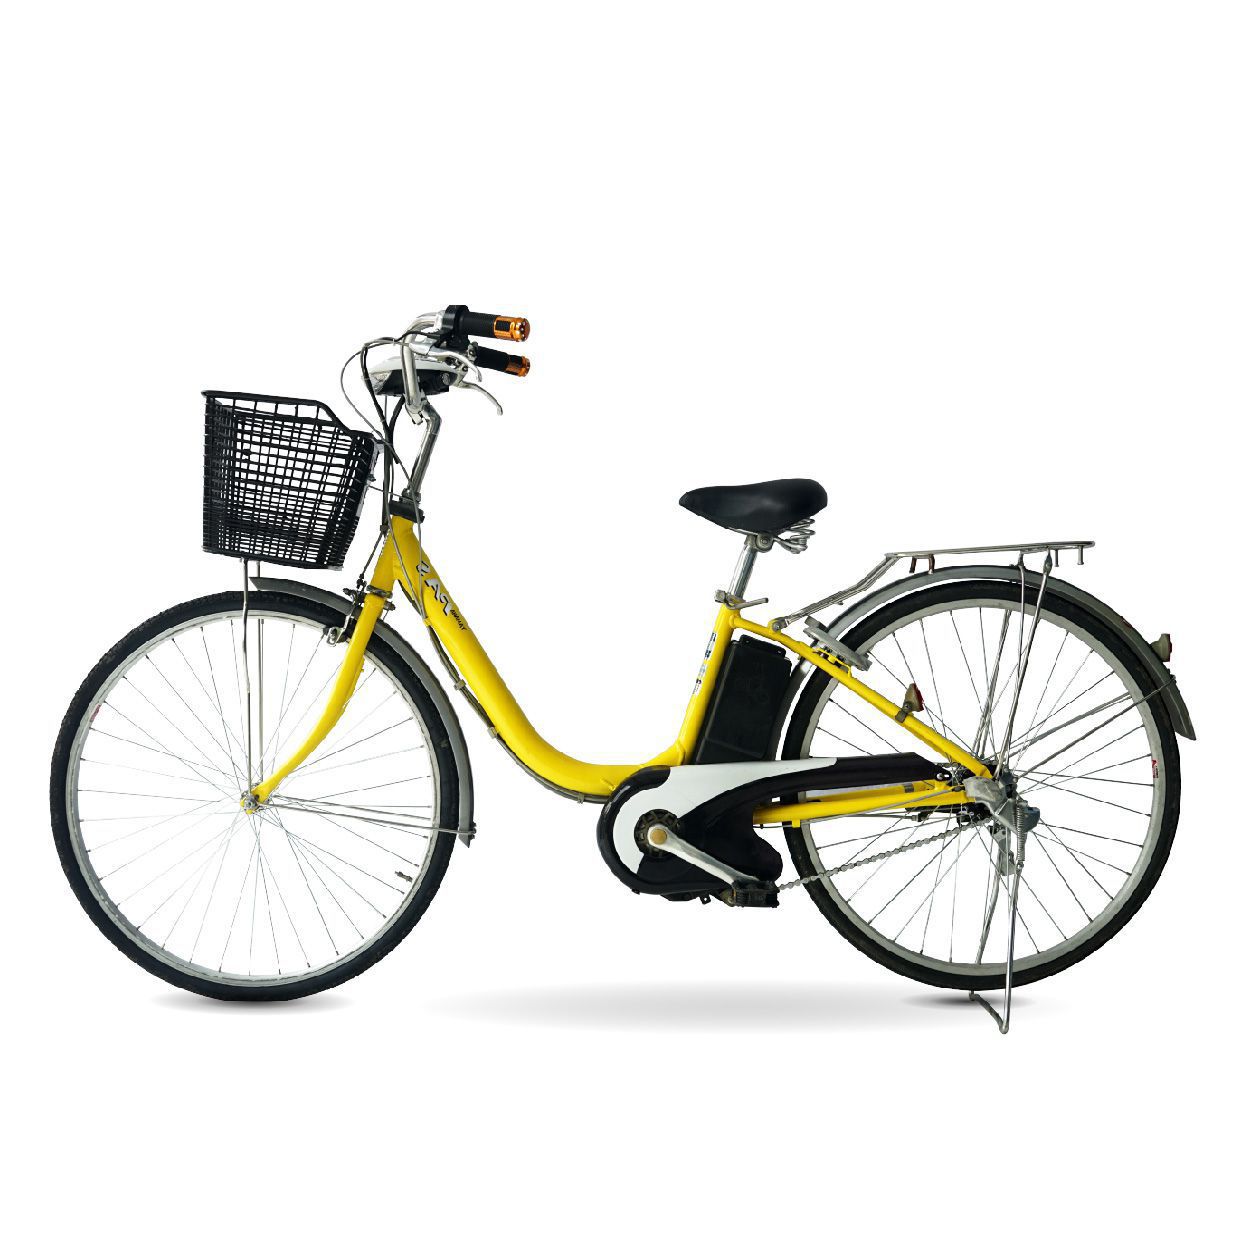 XE DAP TRO LUC YAMAHA PAS 01 - Chọn mua xe đạp điện yamaha cũ giá rẻ bất ngờ